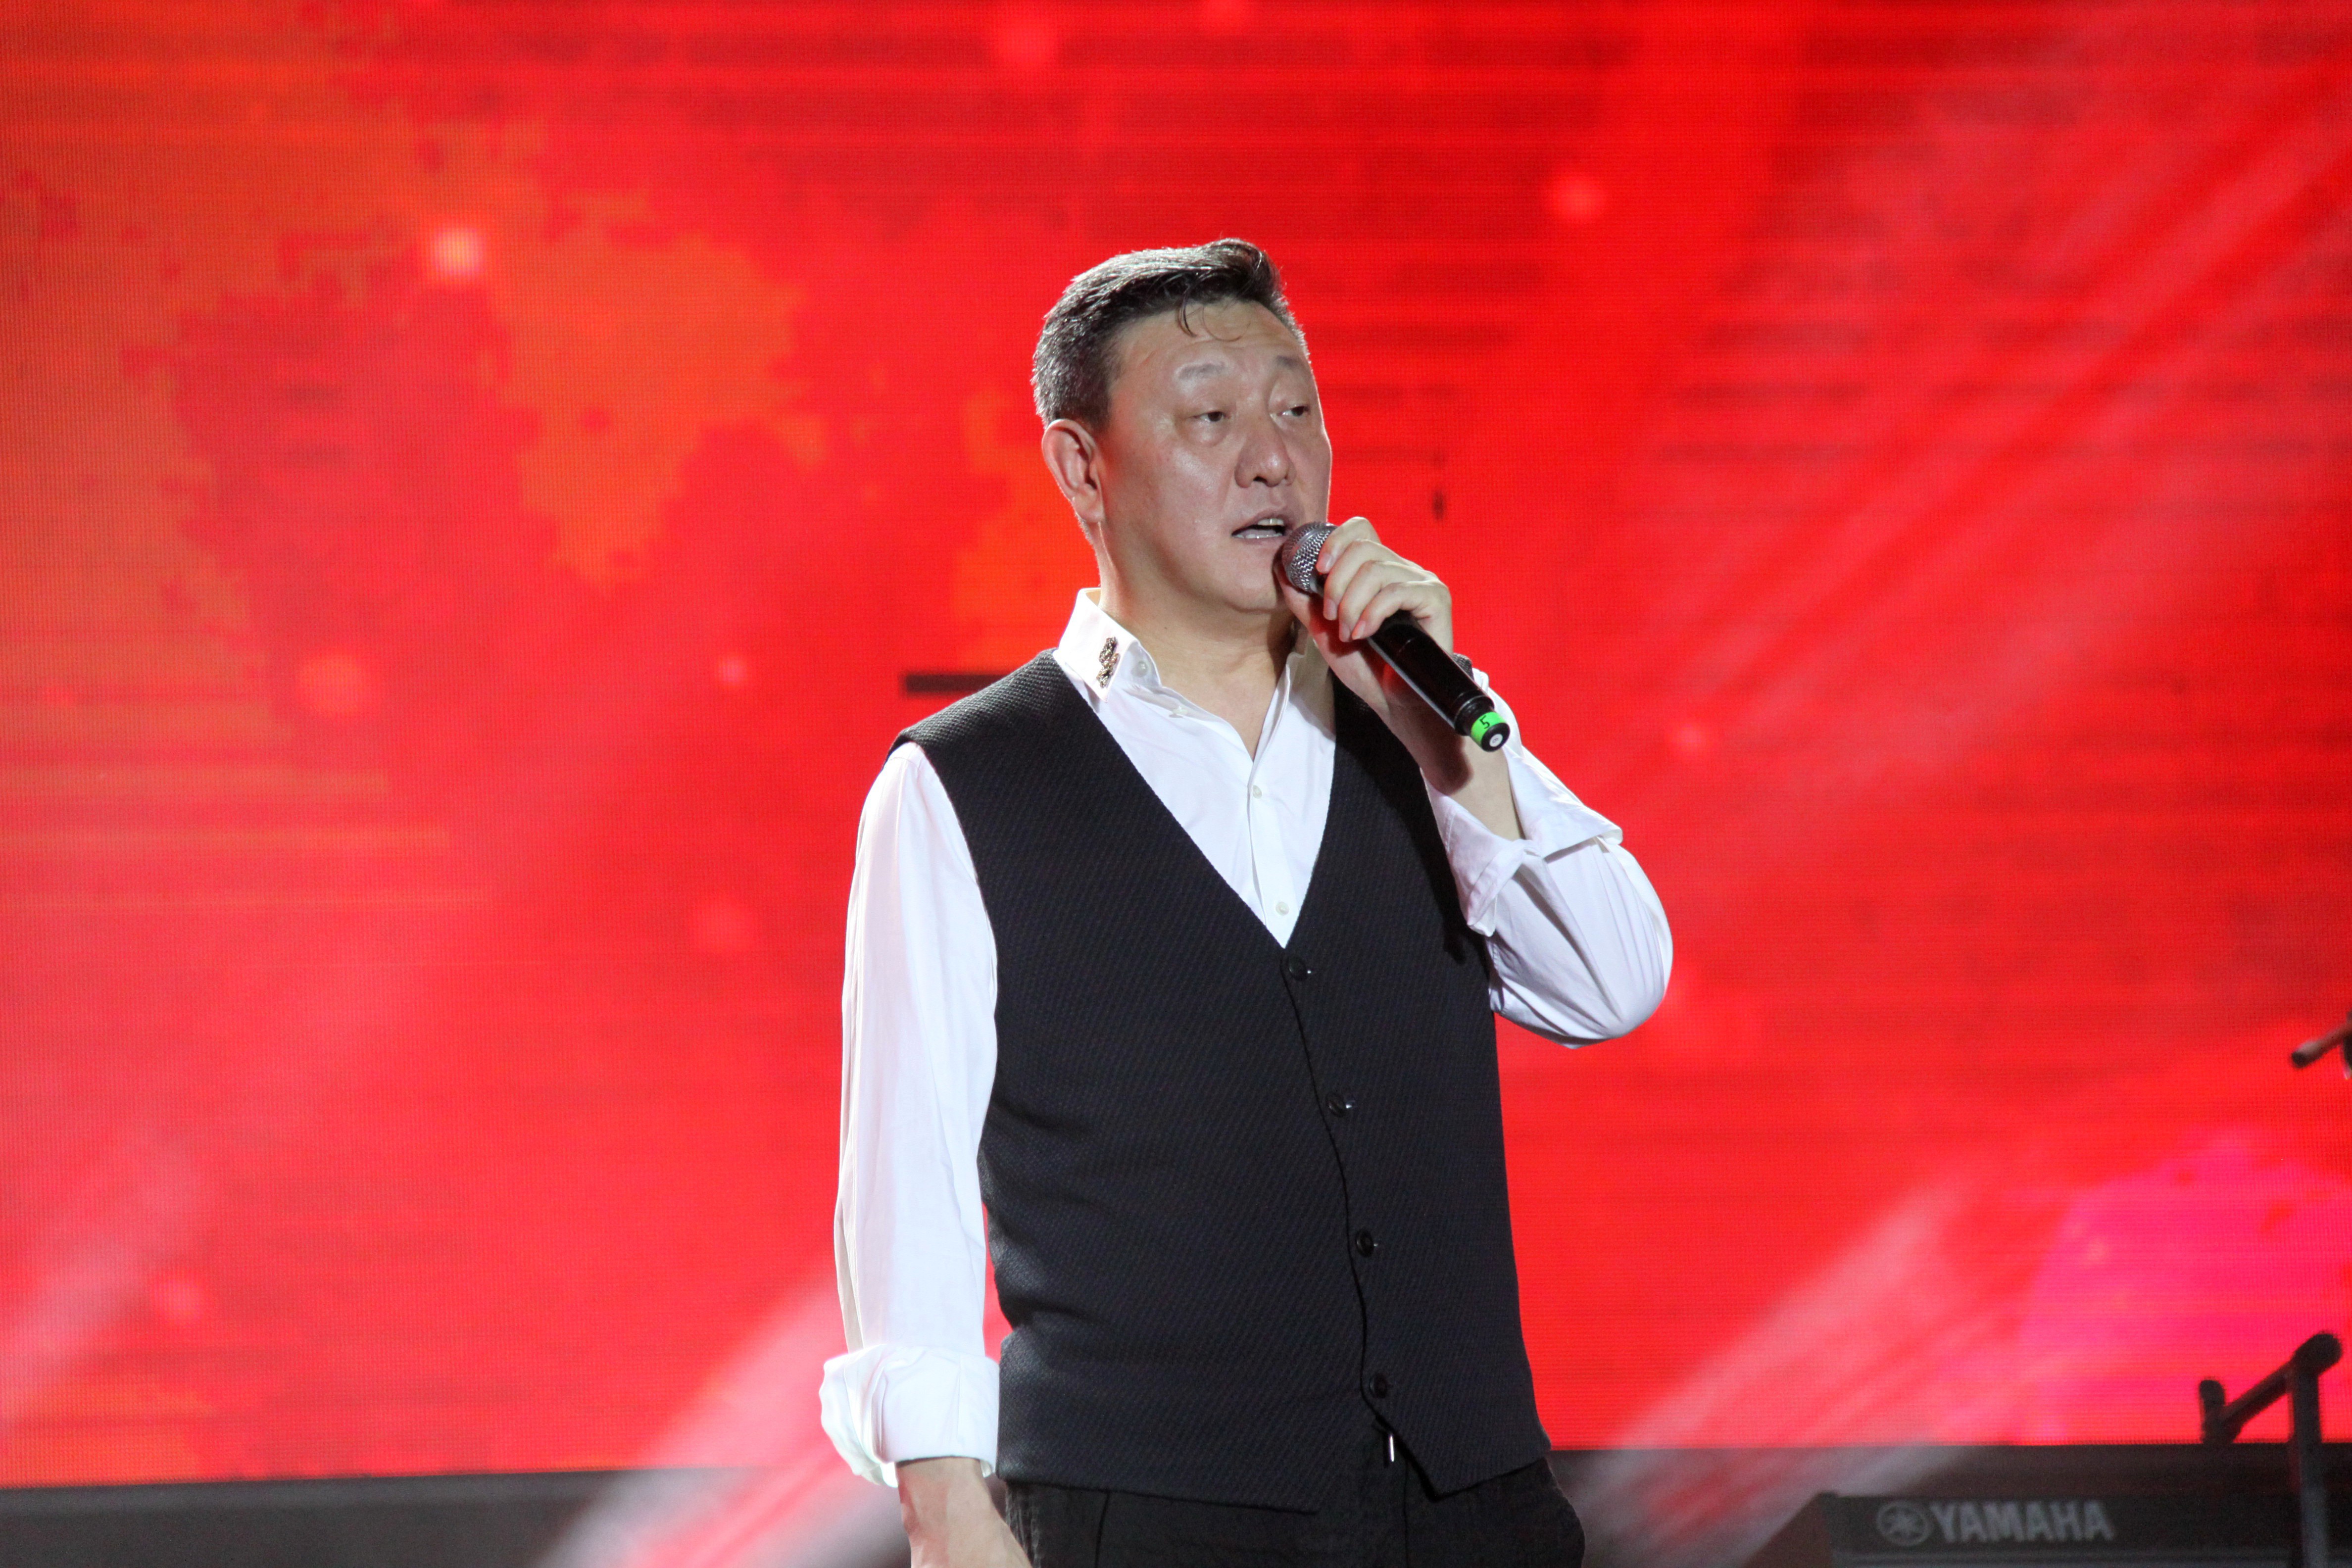 歌手韩磊,黑豹乐队以及女歌手潘辰来河北邢台演出